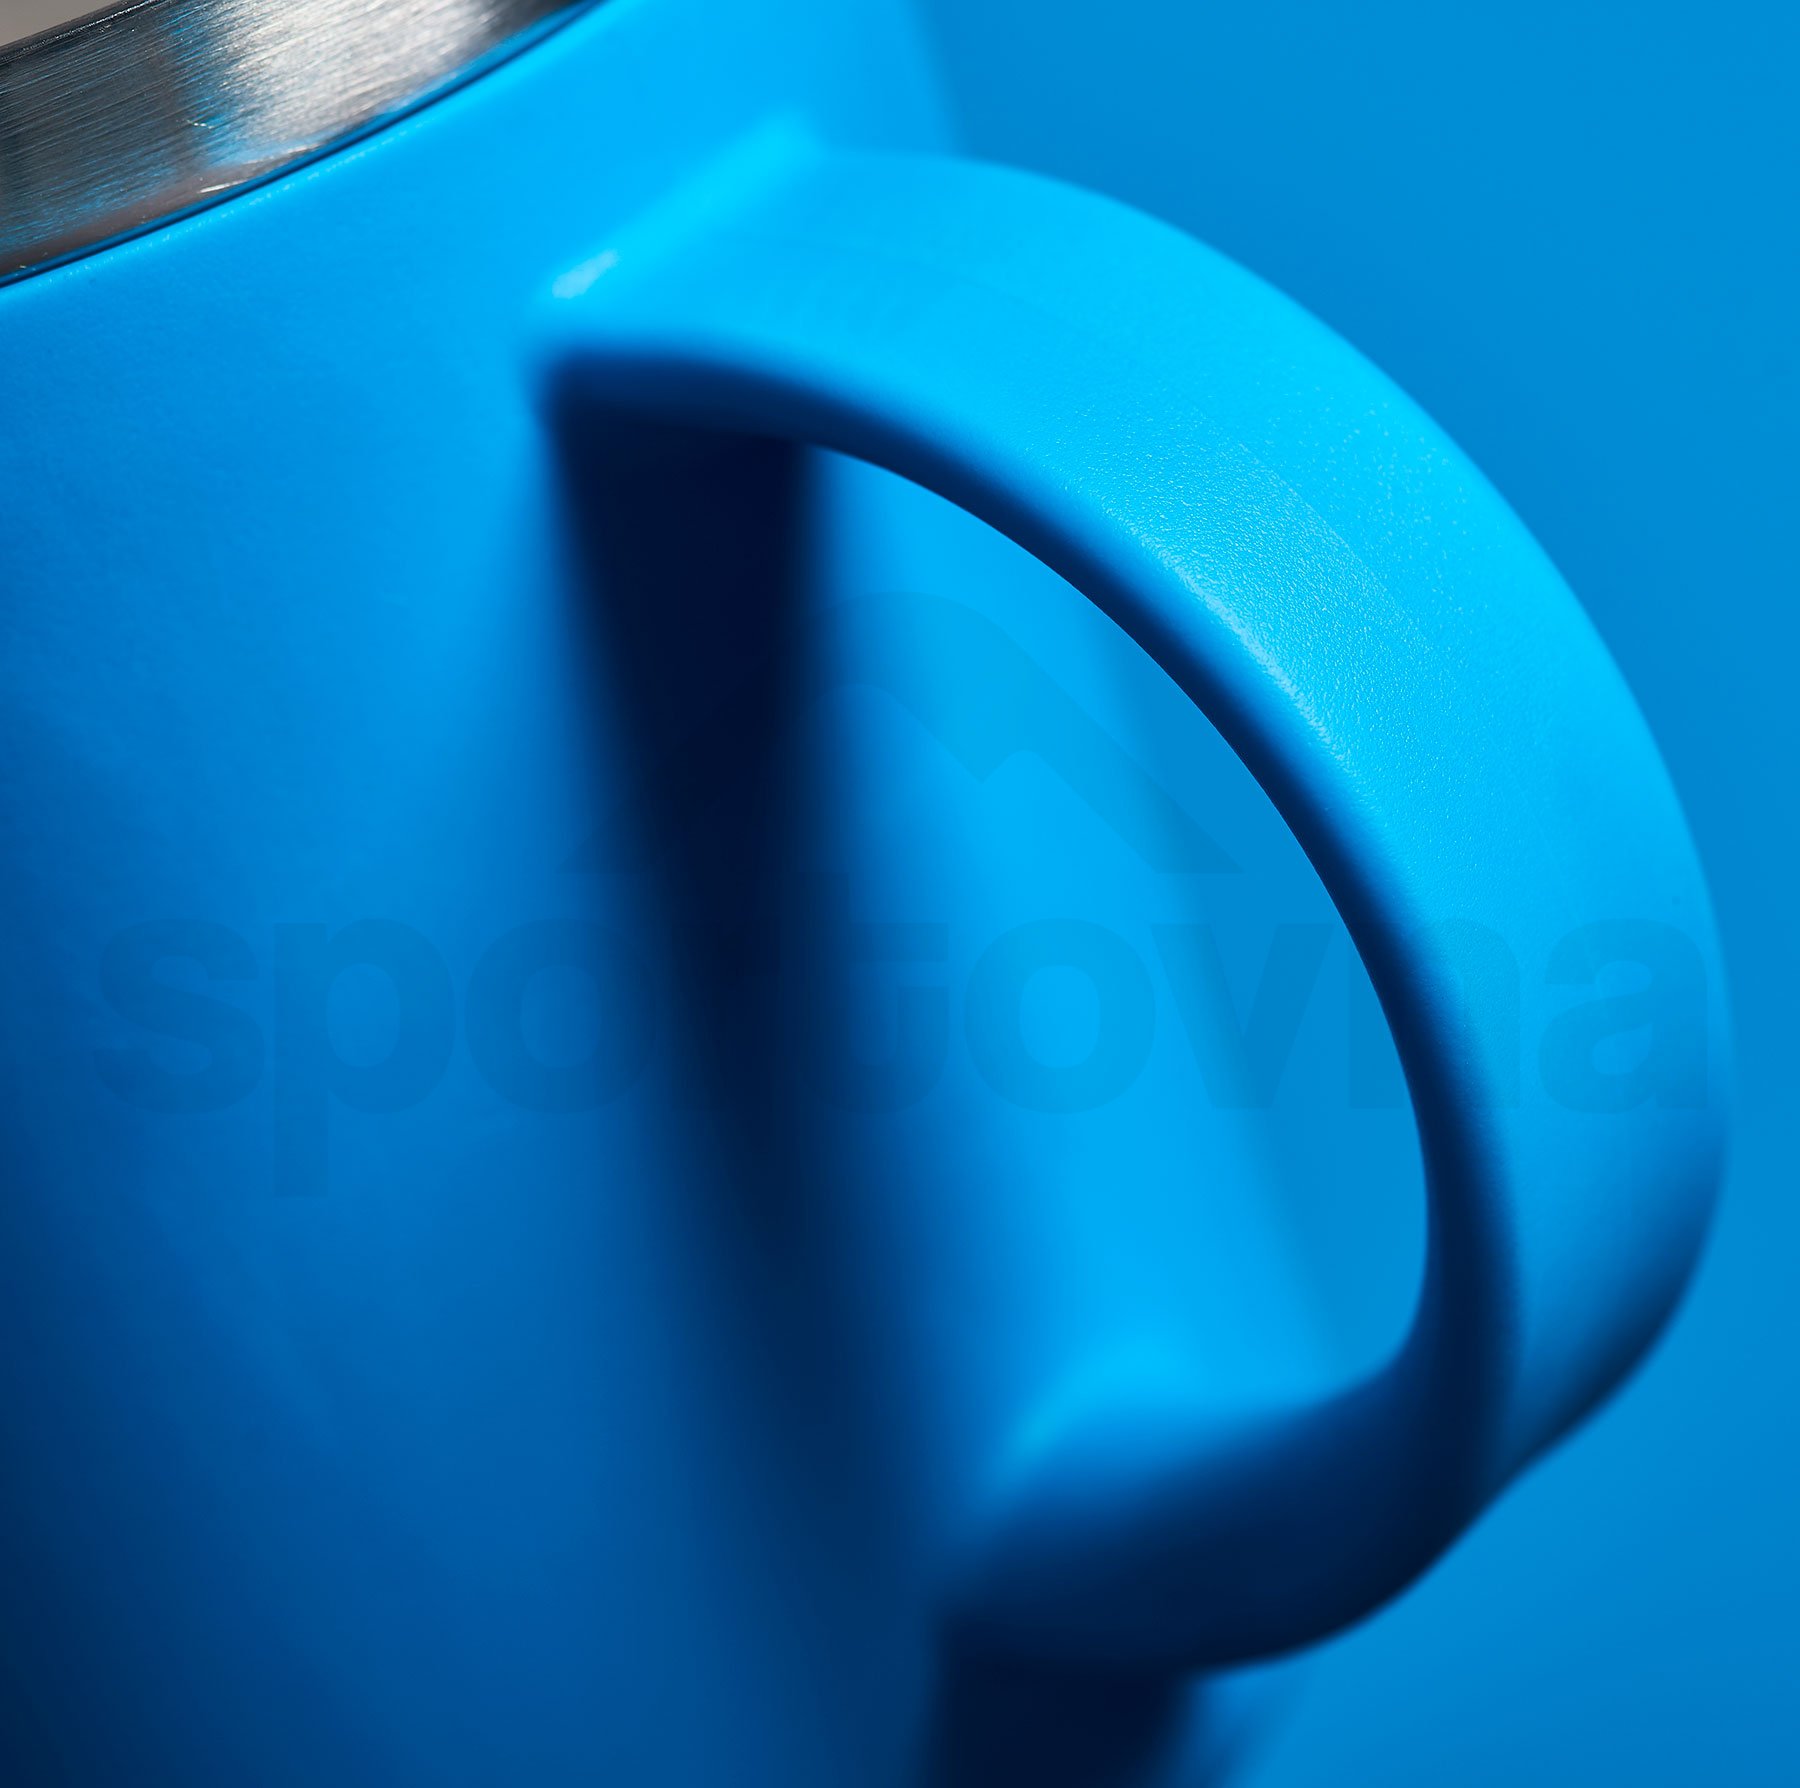 Hrnek Hydro Flask 12 oz Coffee Mug - modrá